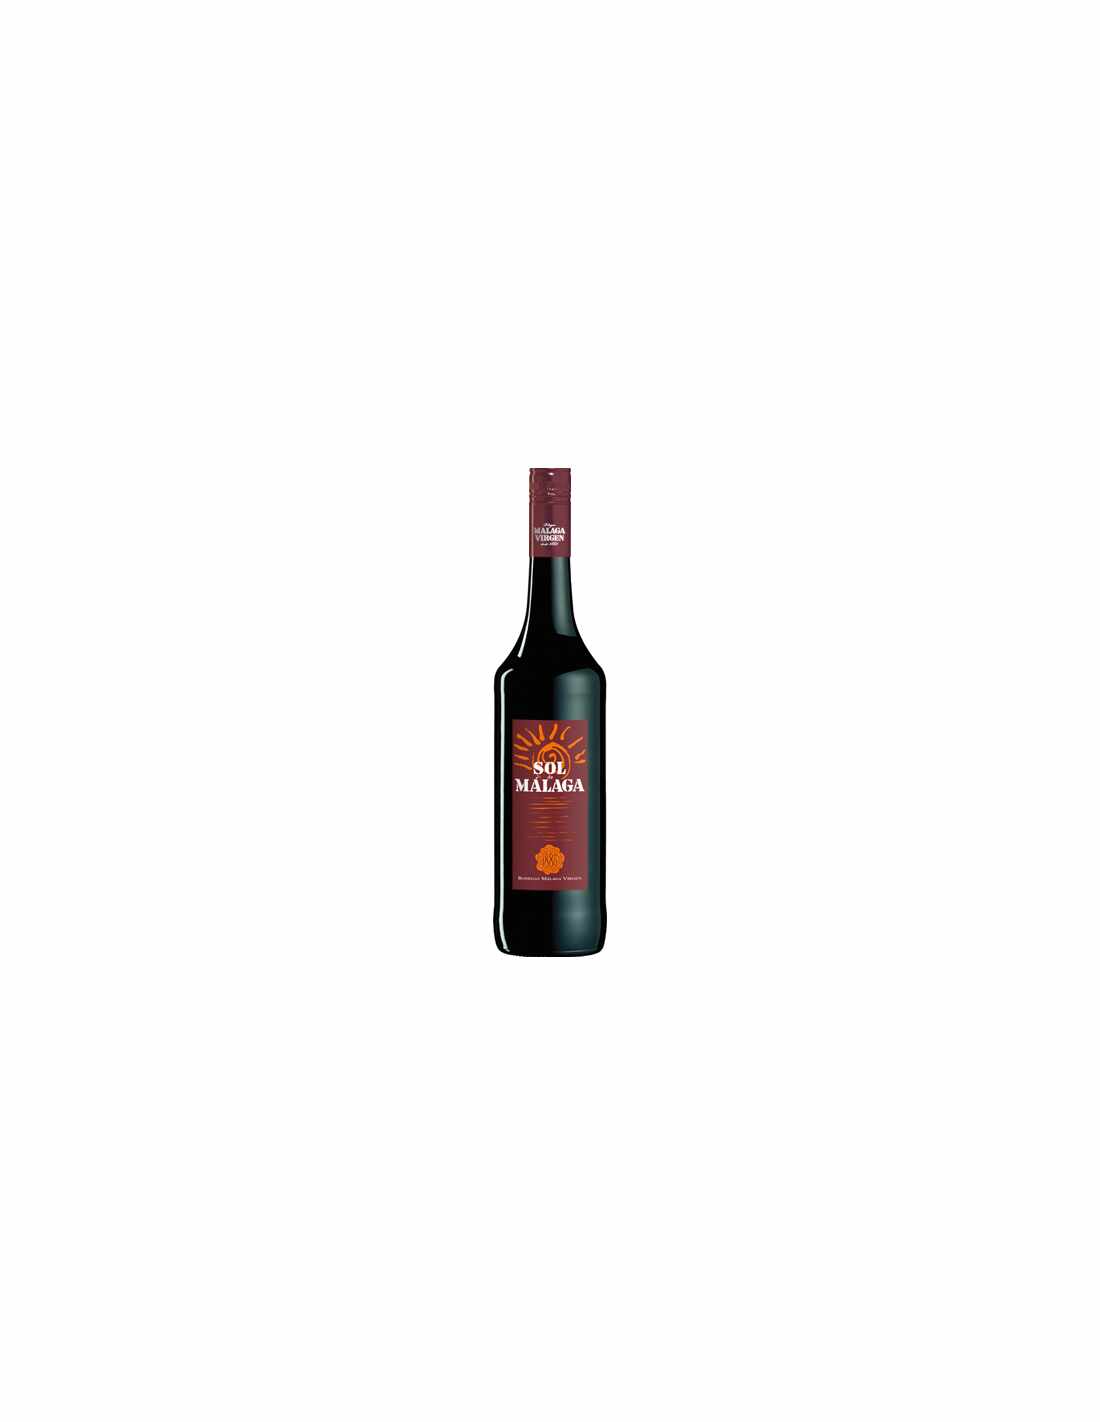 Vin rosu dulce, Cupaj, Sol De Malaga, 15% alc., 0.75L, Spania